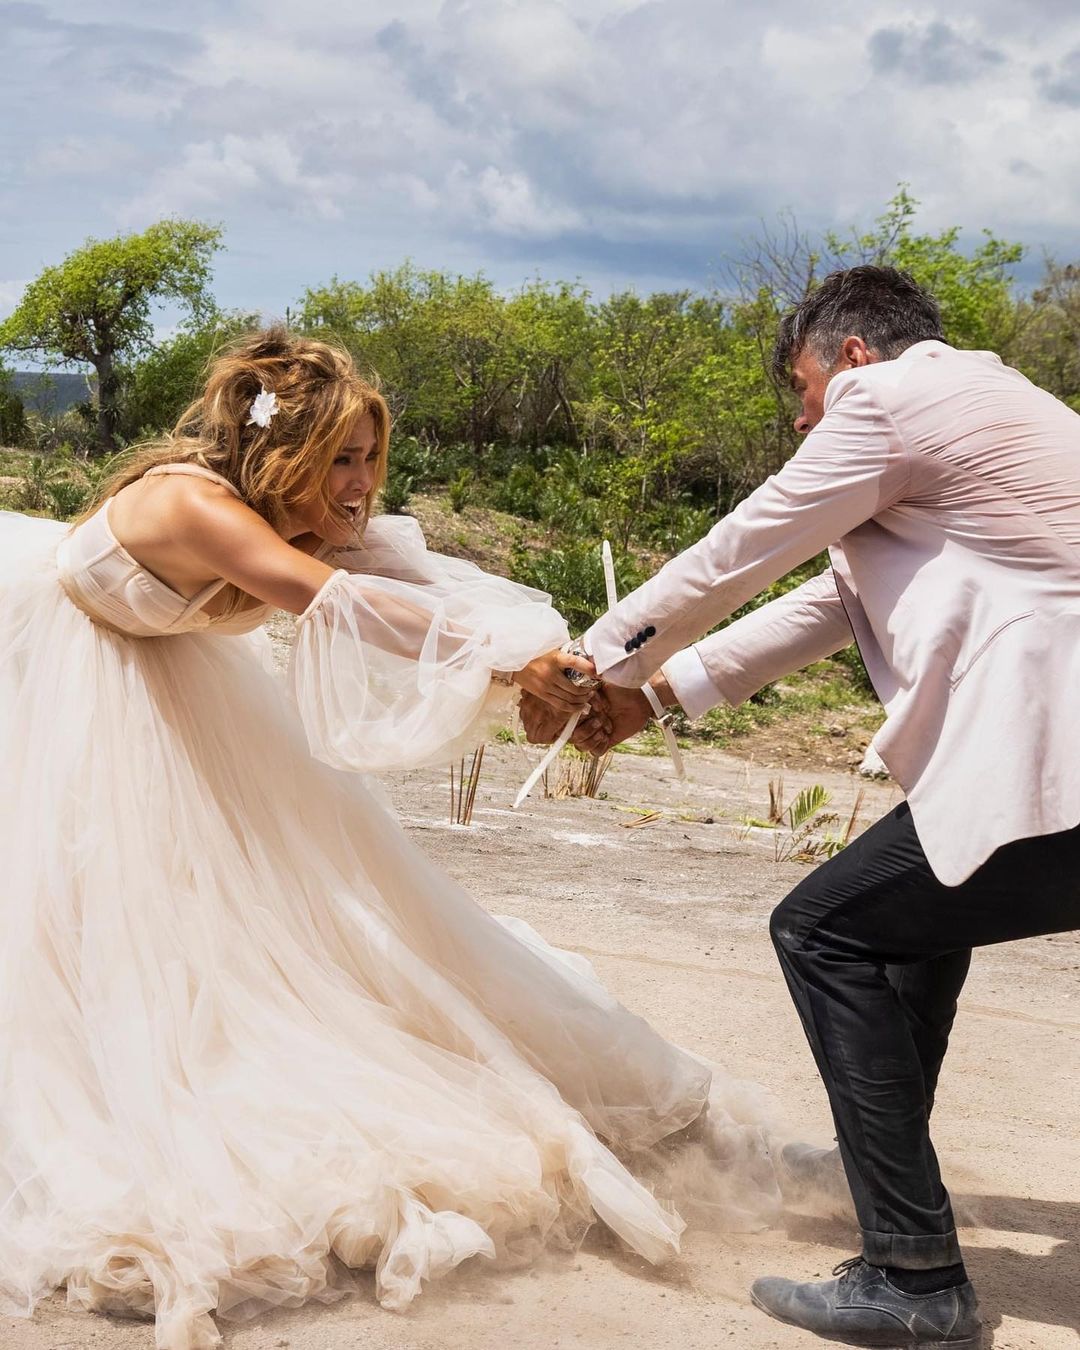 В порванном грязном свадебном платье и с растрепанной прической: Дженнифер Лопес удивила новыми фото